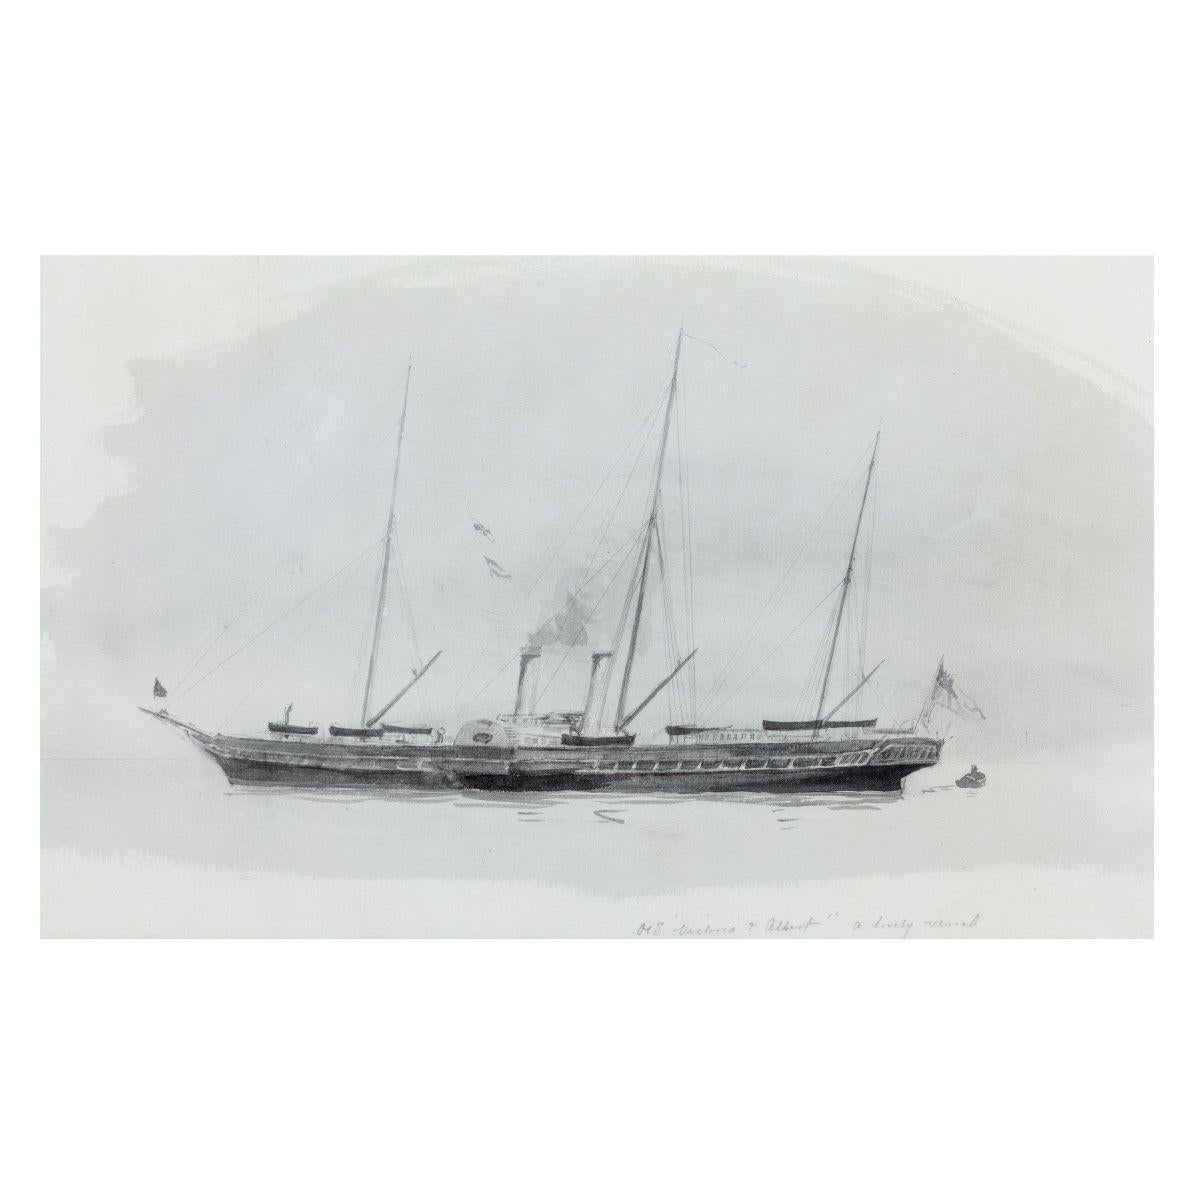 Une aquarelle de Wyllie représentant le yacht royal. Sans doute le plus beau bateau à aubes et le plus beau yacht jamais construit.
